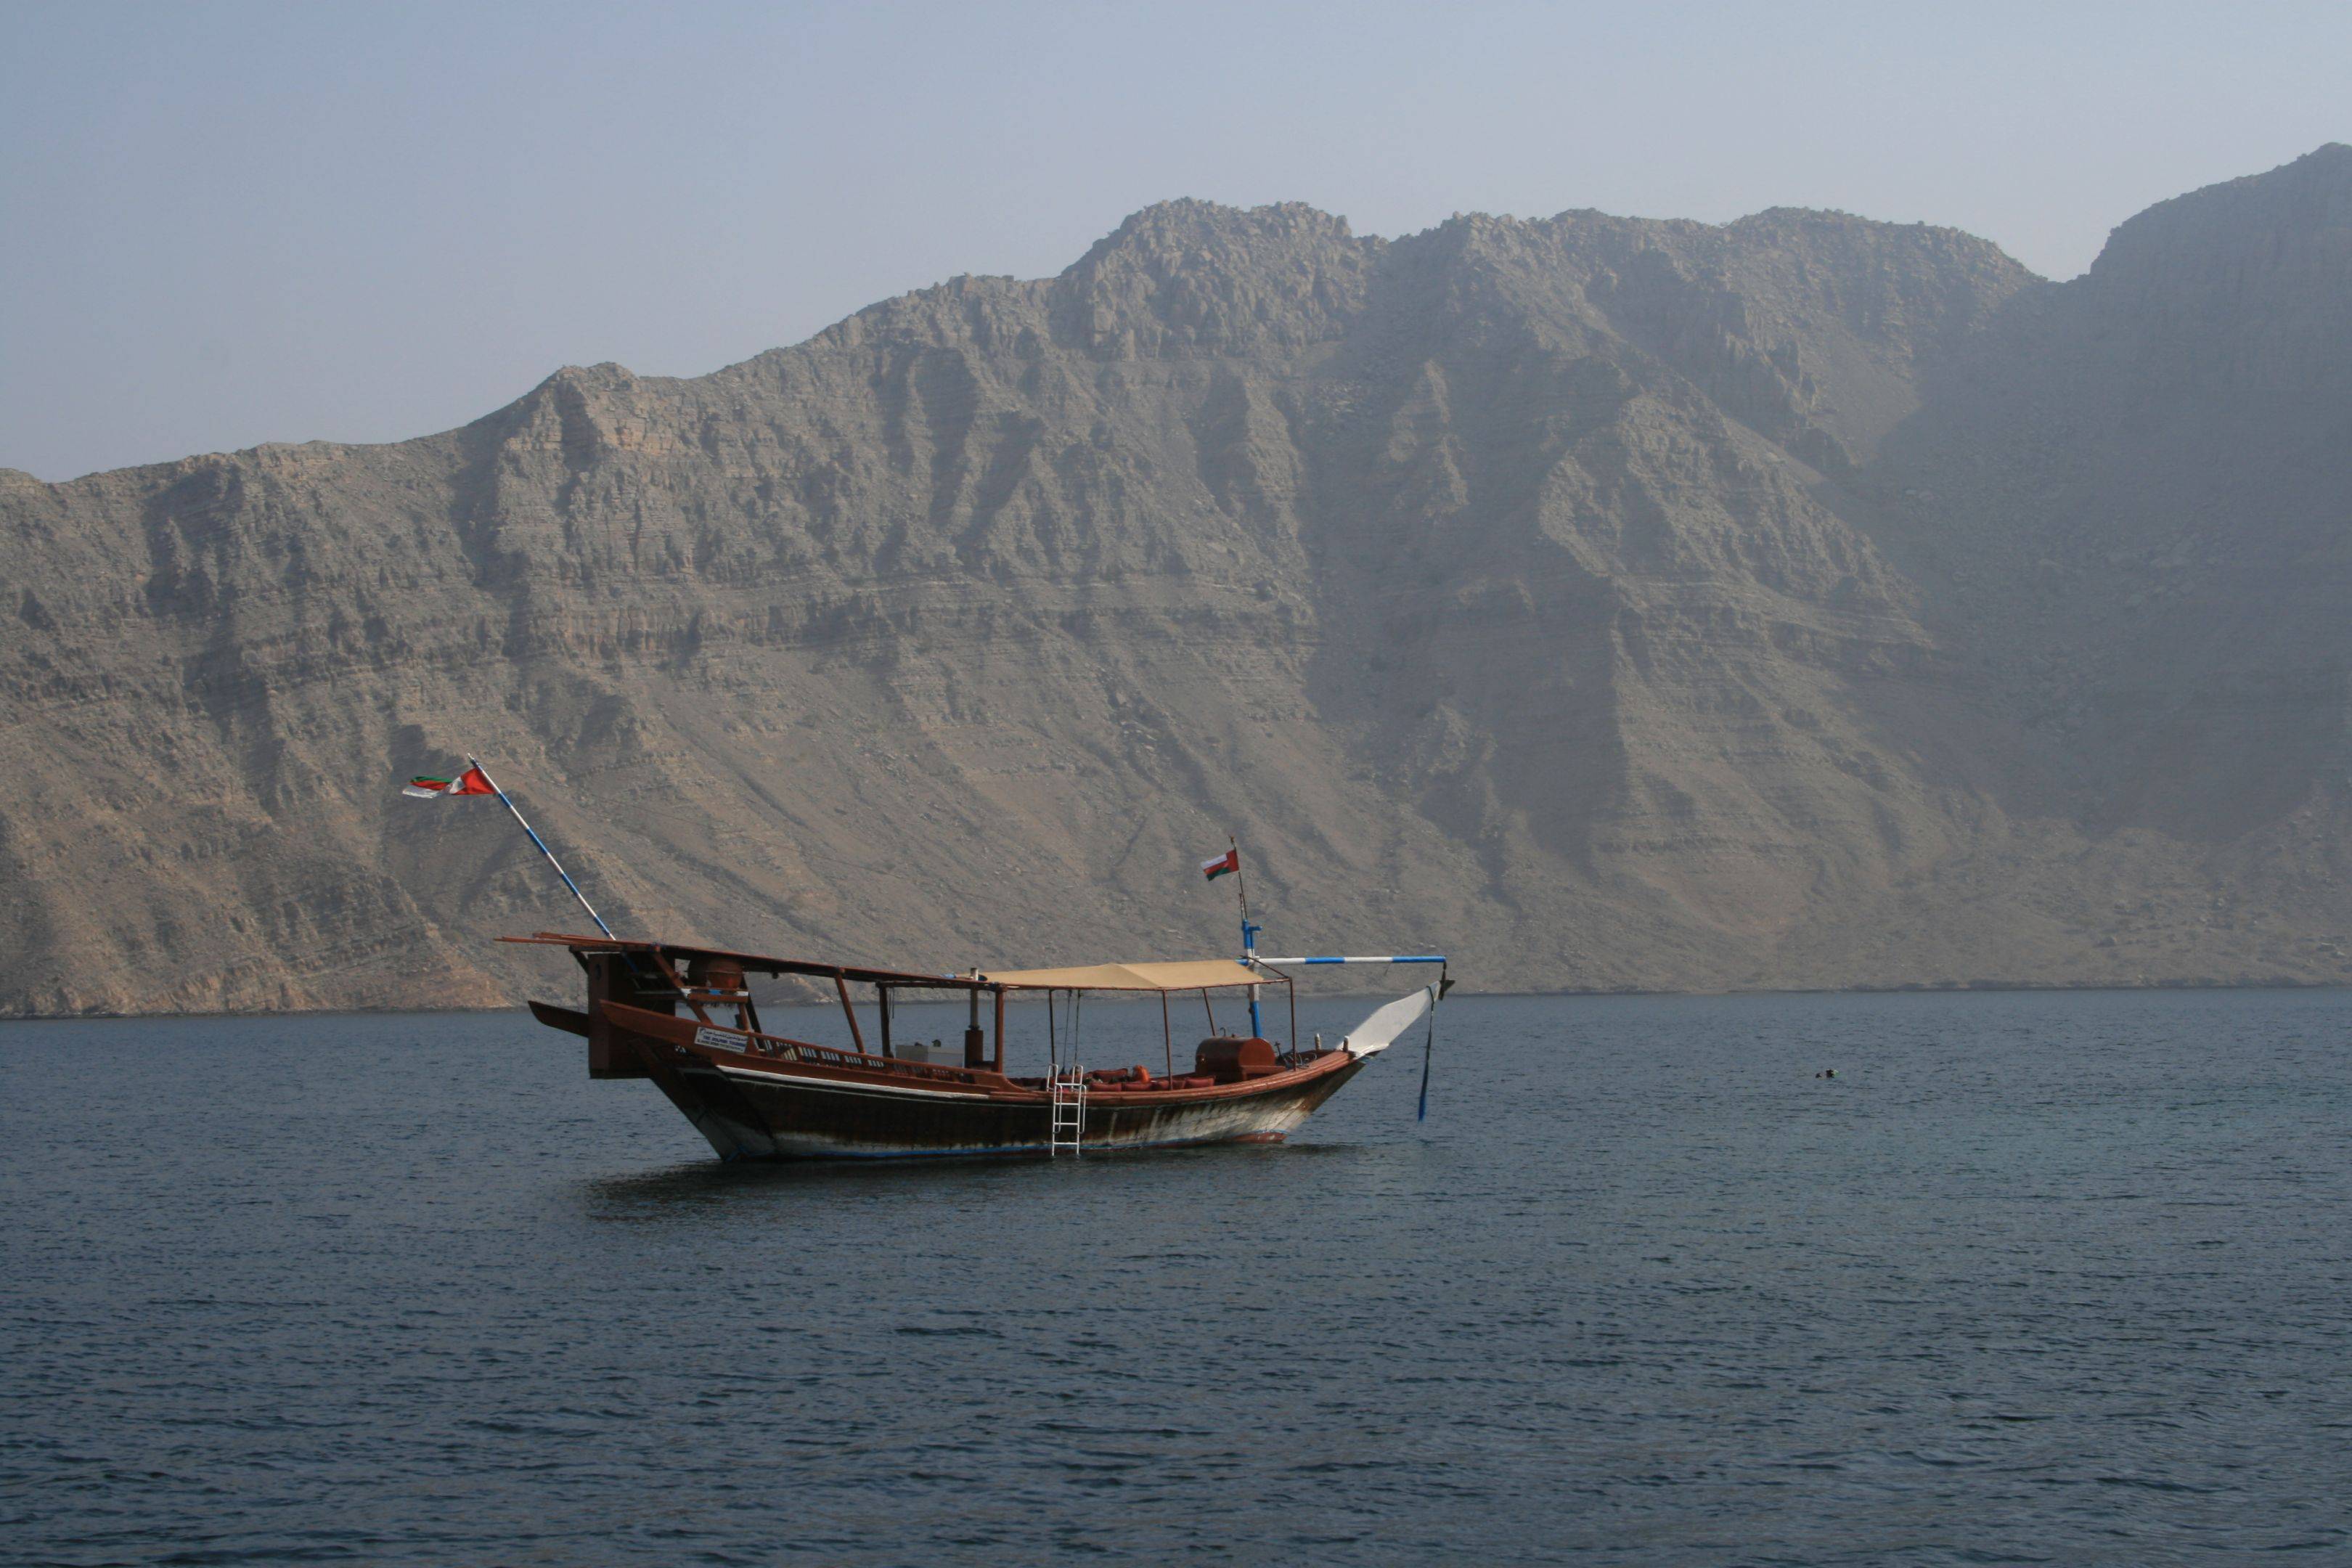 Croisière à Bord d'un voilier Omanais traditionnel